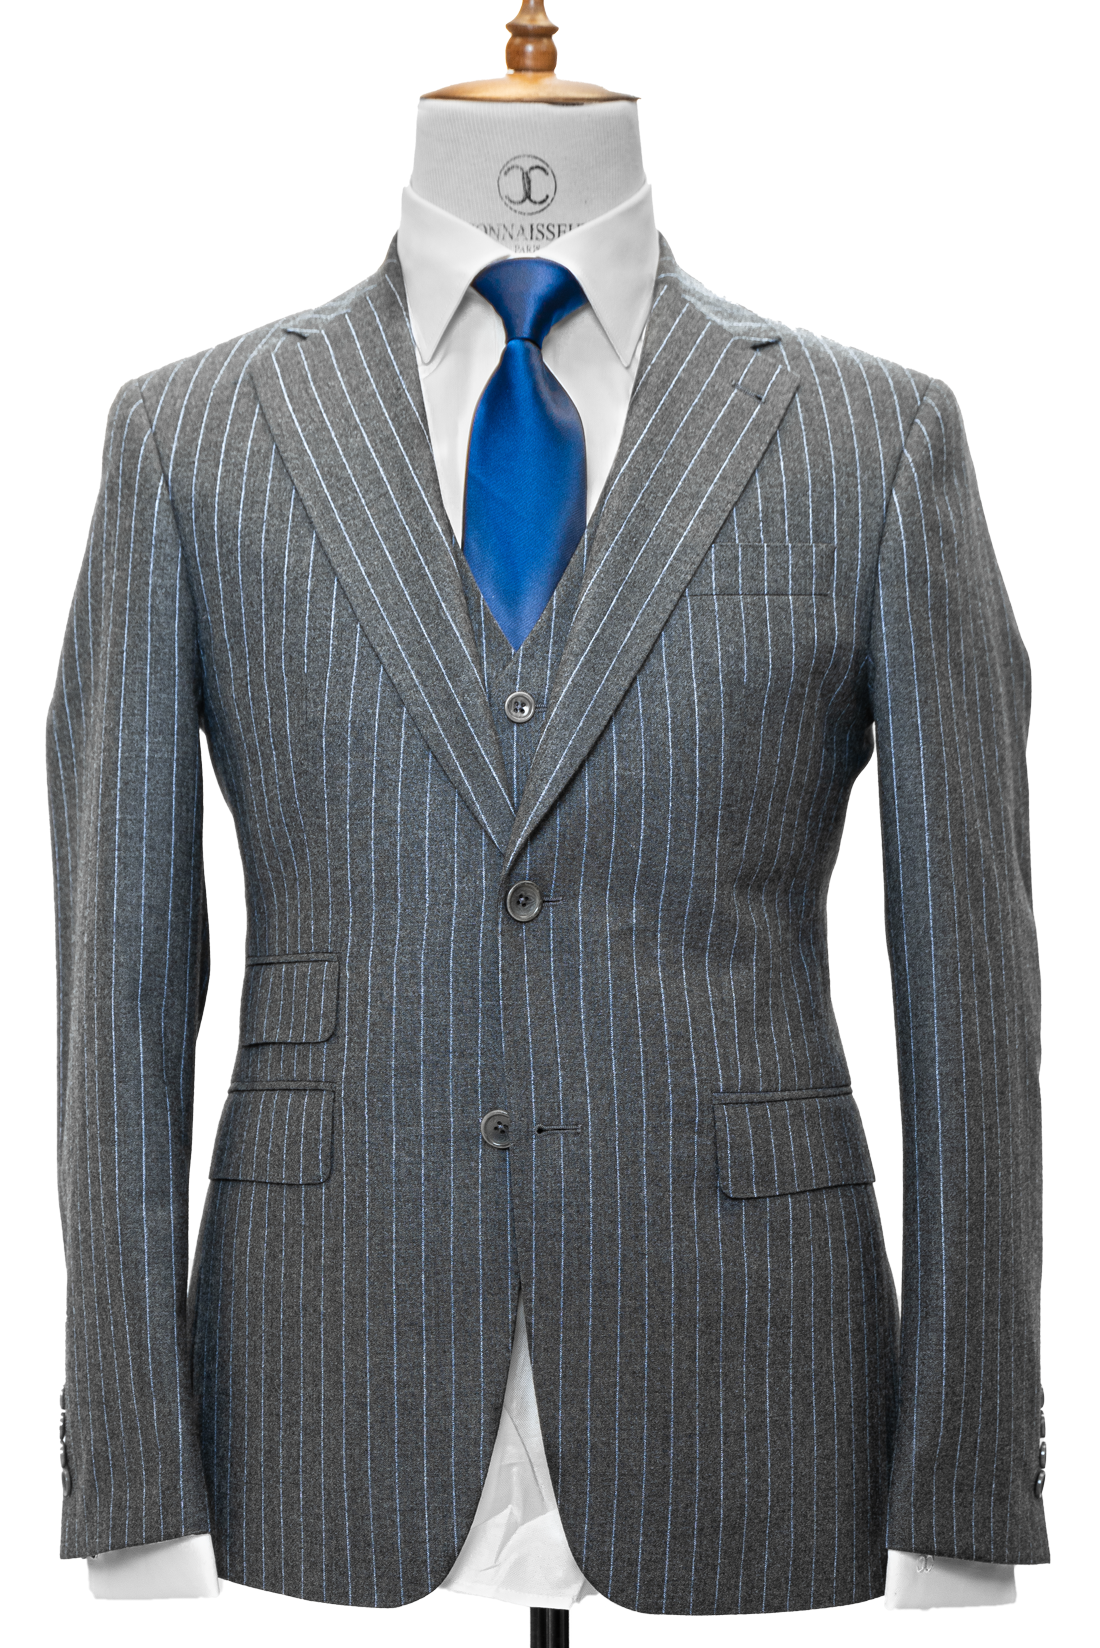 Zignone - Grey with light blue pin stripes cashmere 3-piece slim fit 3-piece suit